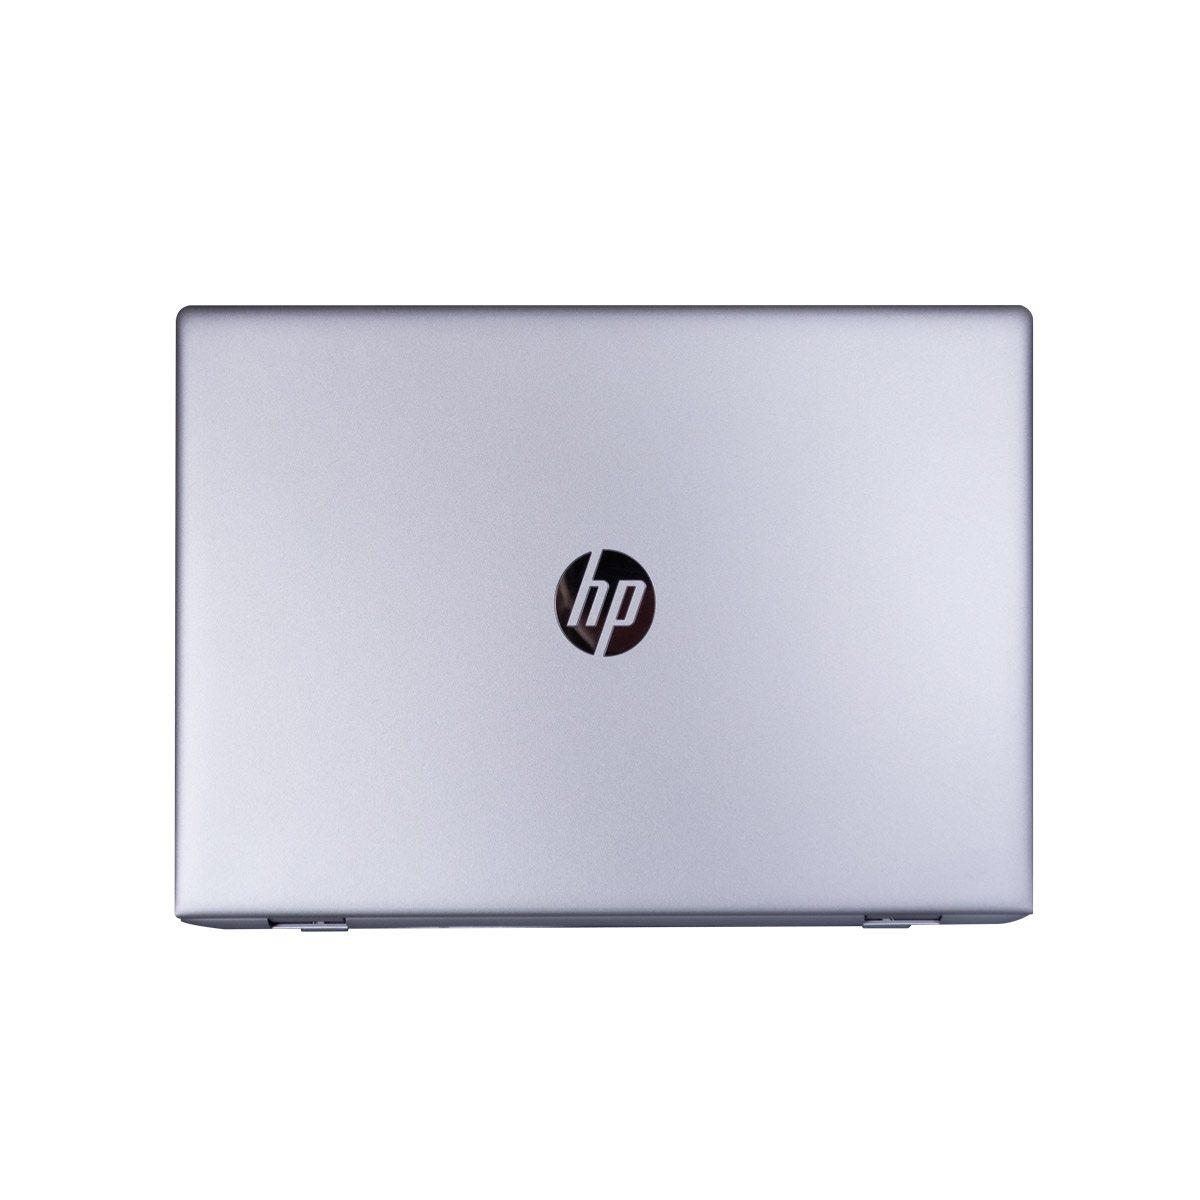 HP ProBook 650 G5 - Business Laptop